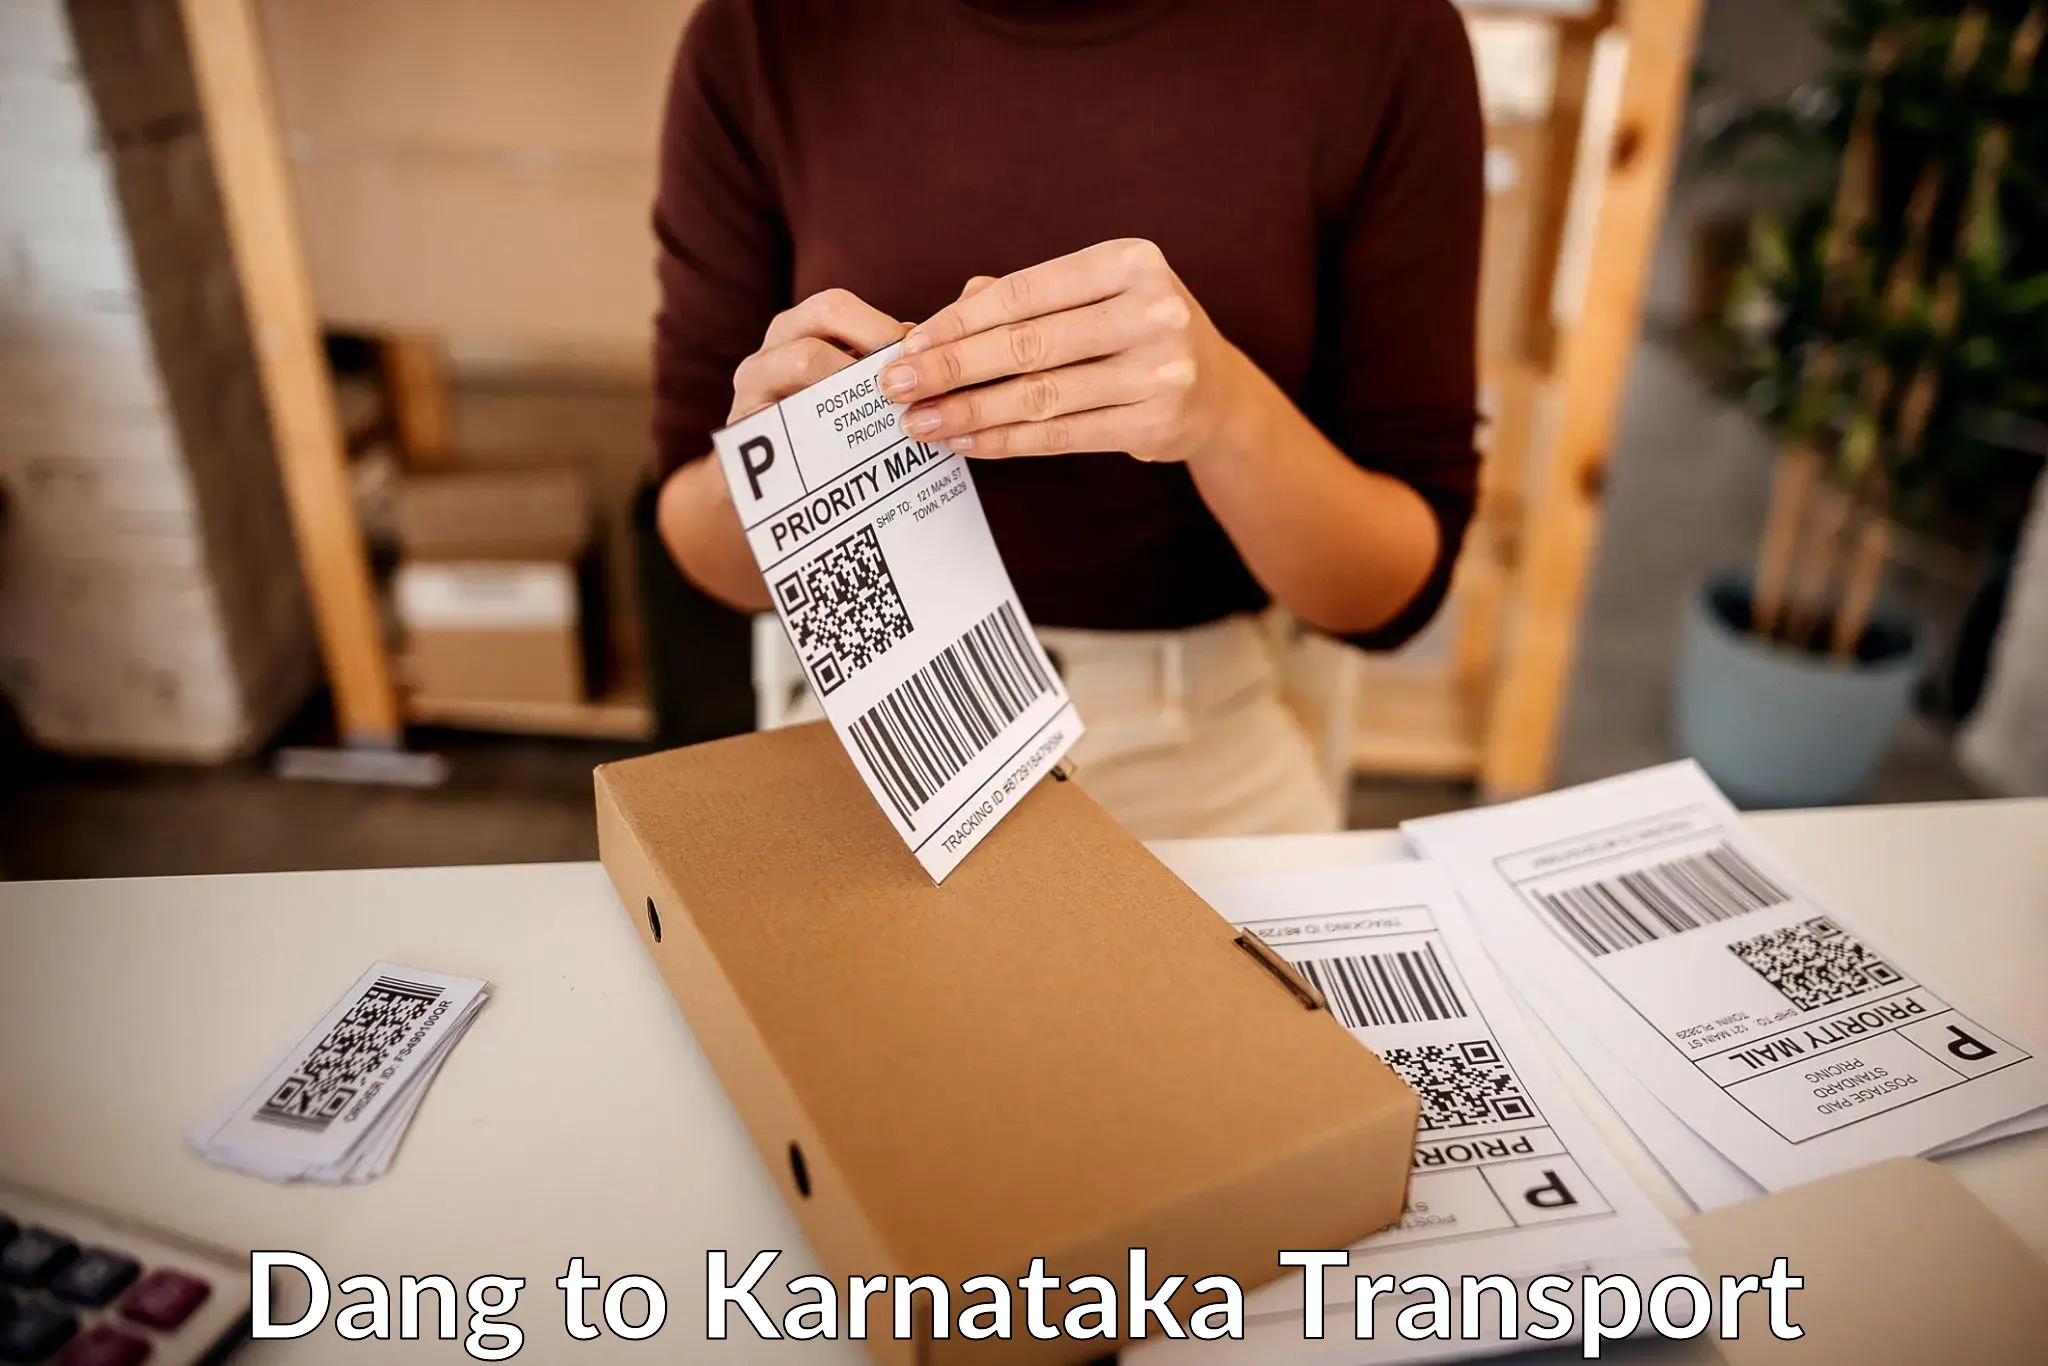 Shipping services Dang to Ramanagara